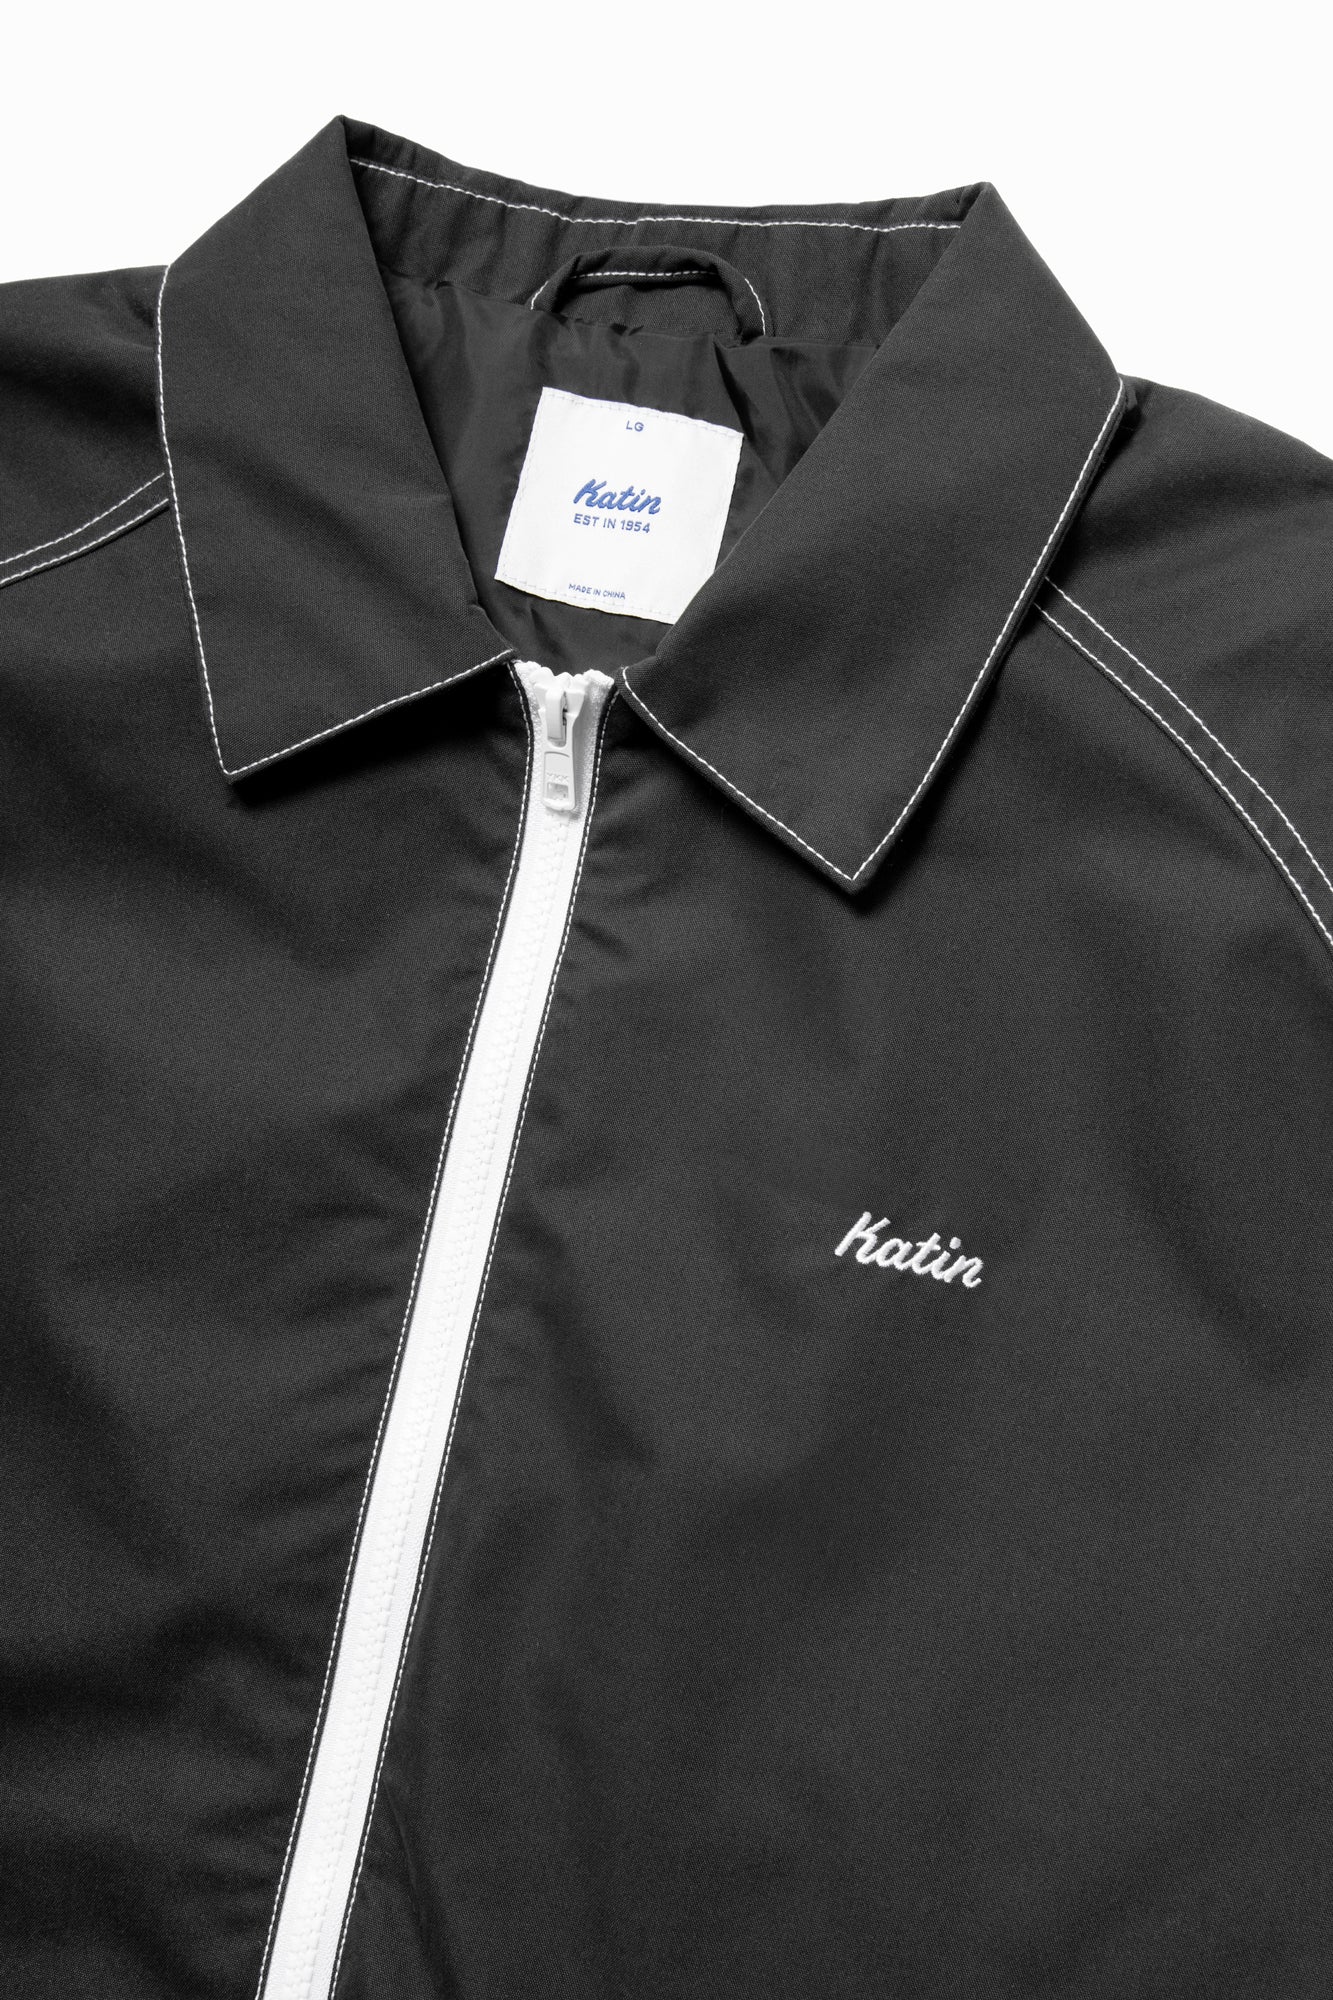 Katin Surfside Men's Jacket | Black Wash details